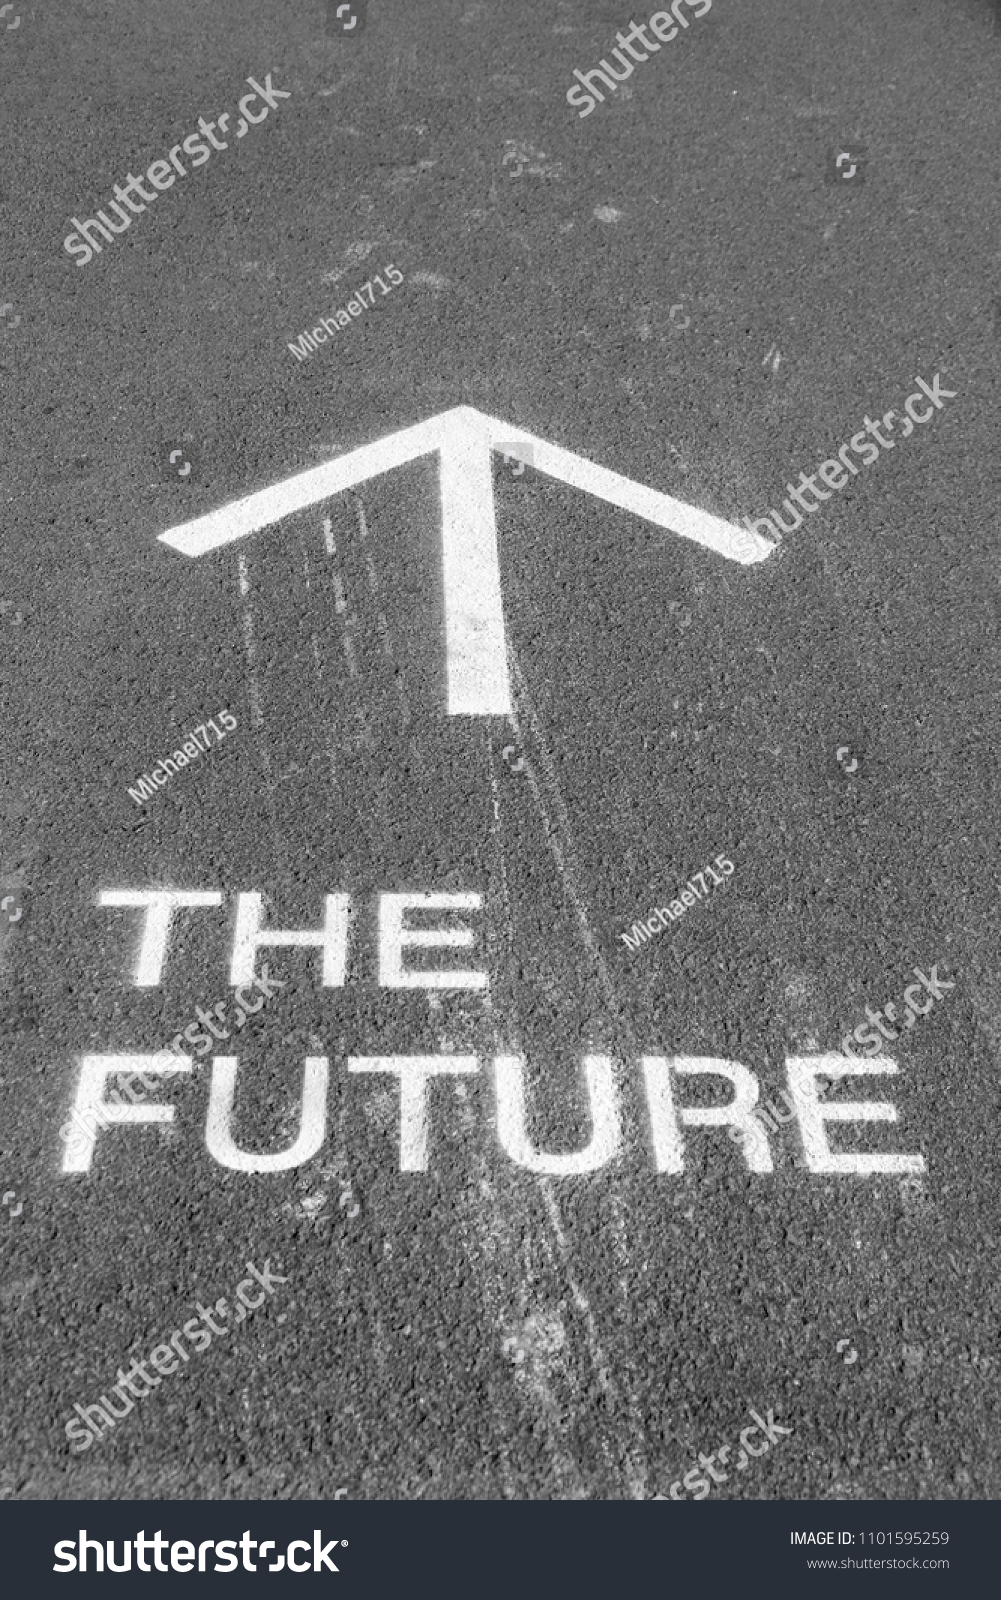 The future ahead #1101595259